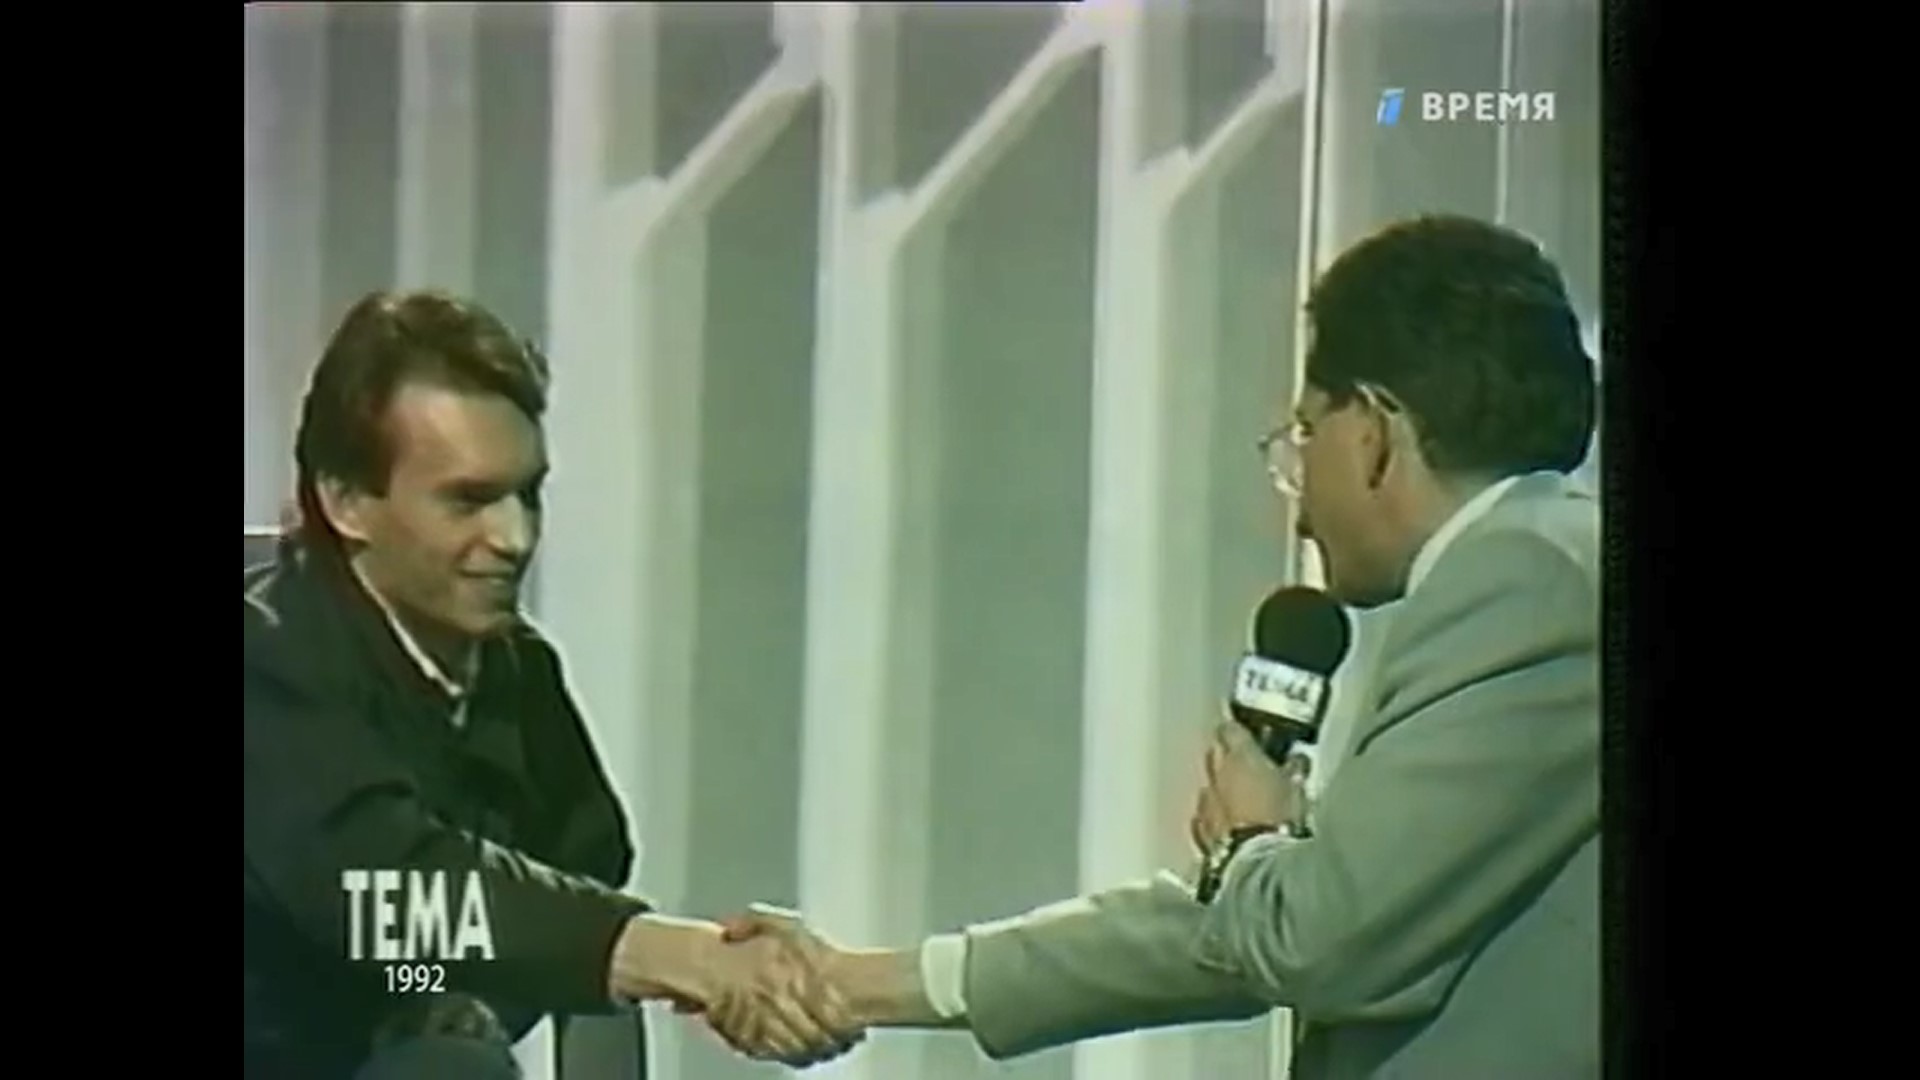 Знаменитое рукопожатие. Геннадий Рощупкин и Влад Листьев на записи передачи"Тема", 1992 год 